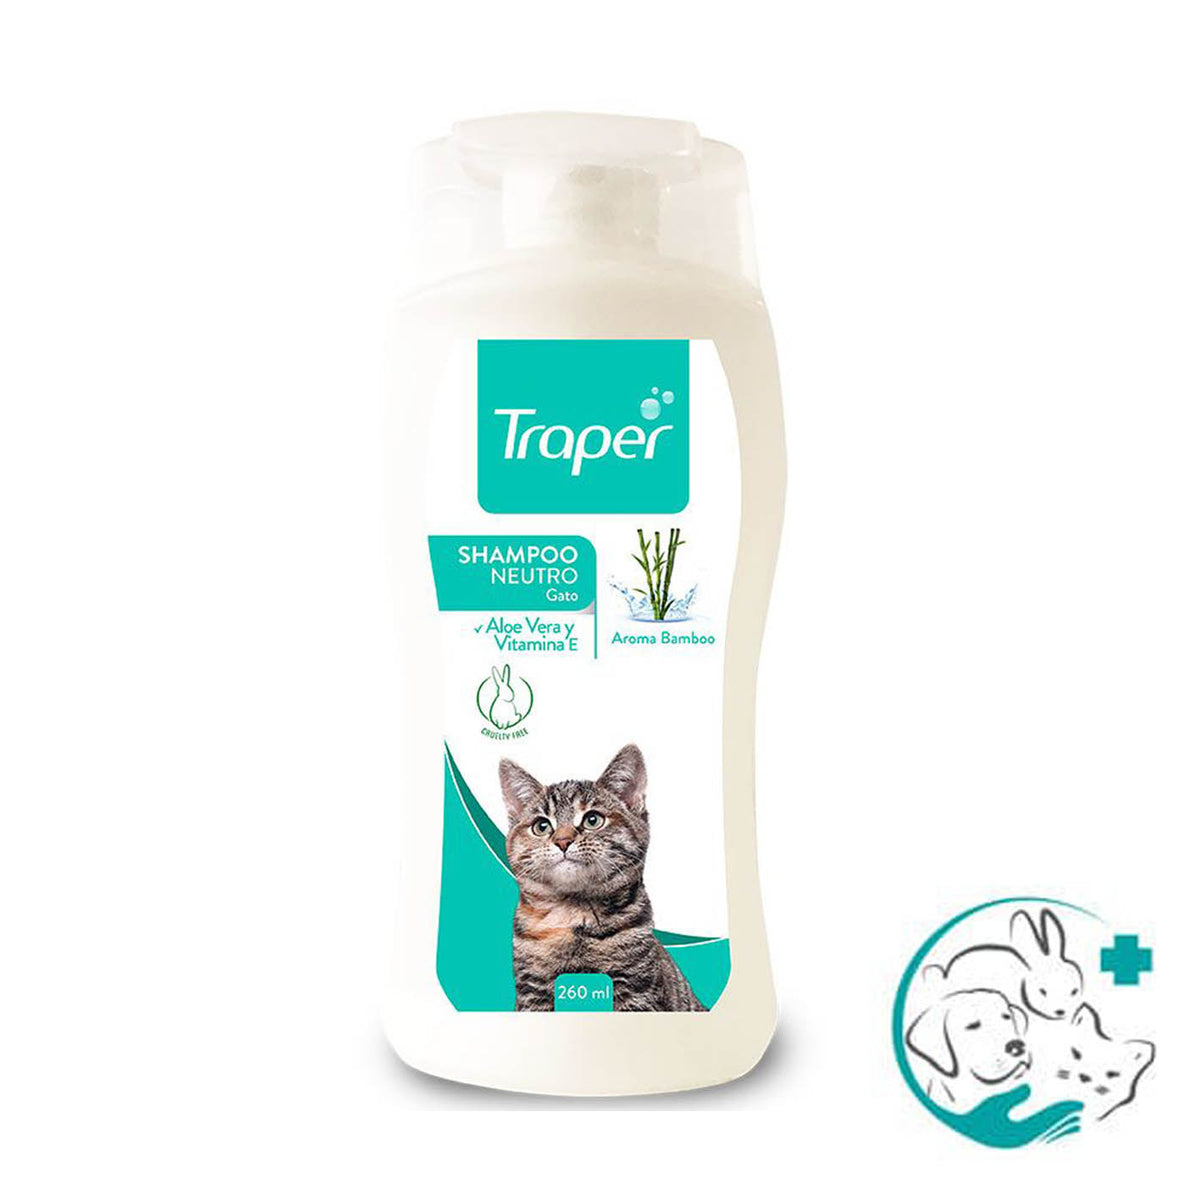 Traper Shampoo Neutro Gato